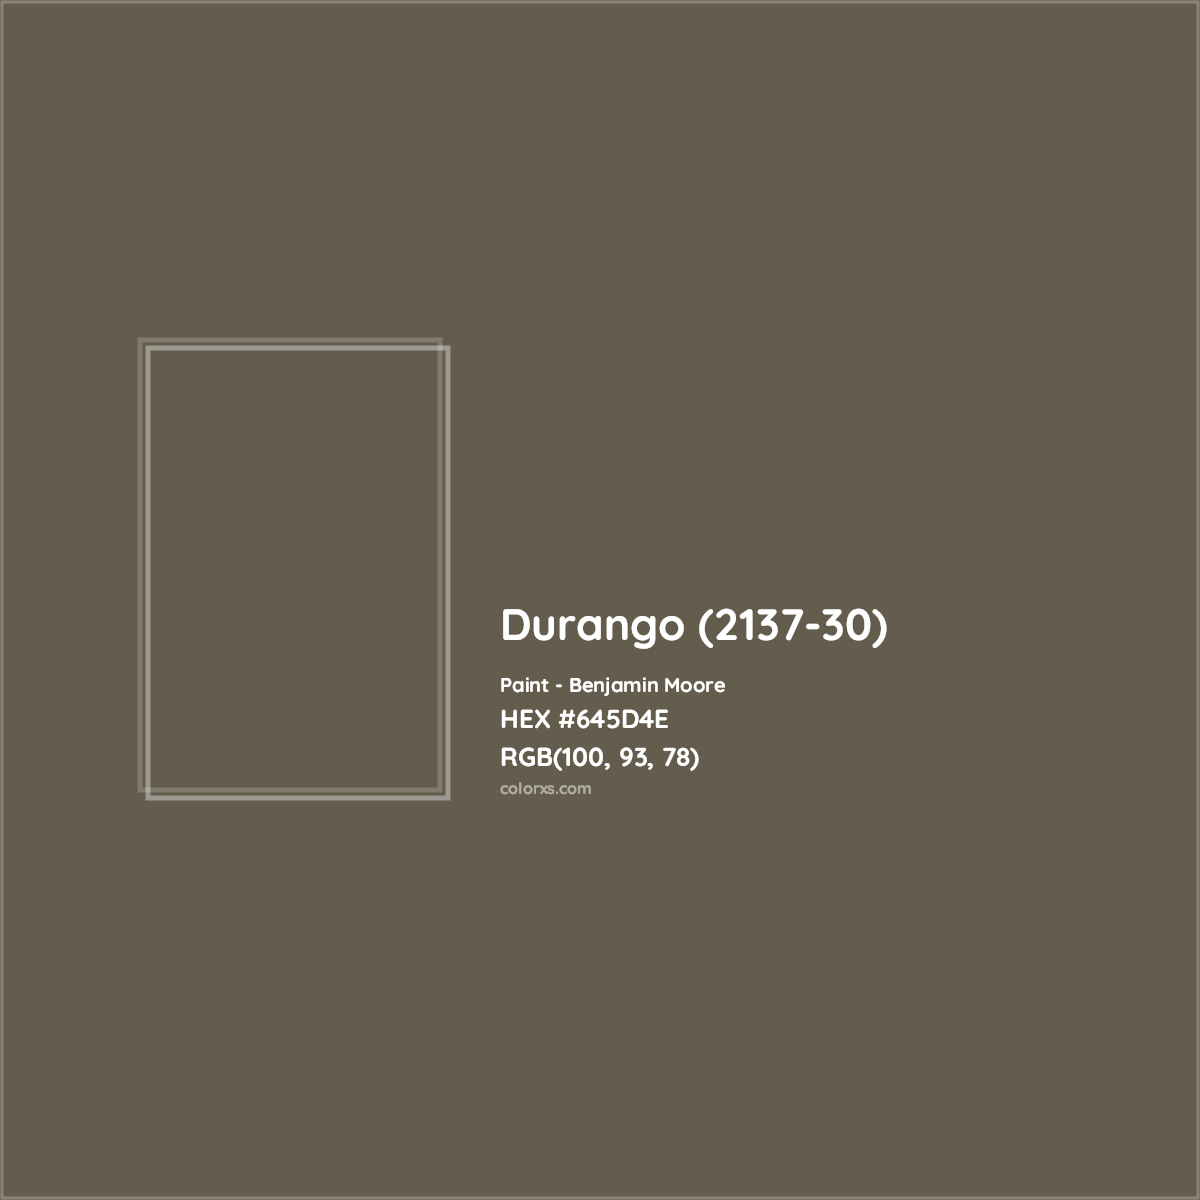 HEX #645D4E Durango (2137-30) Paint Benjamin Moore - Color Code